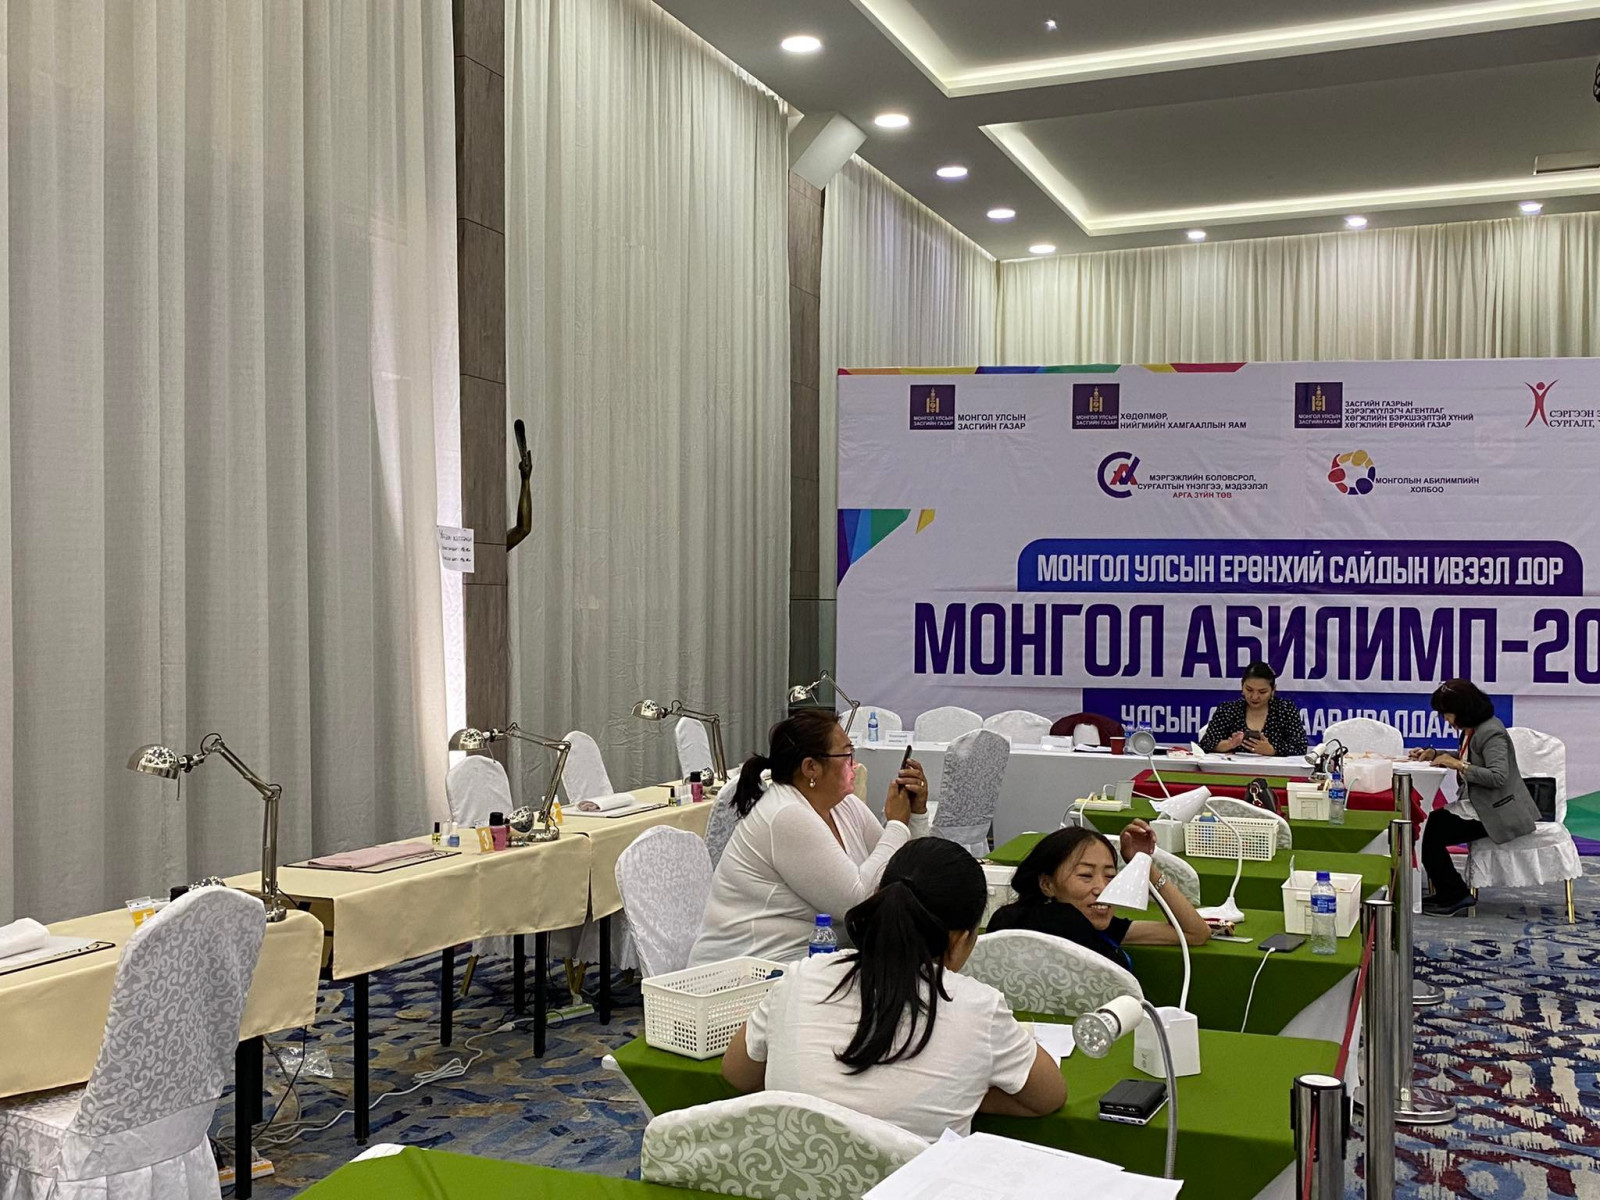 ШУУД: “Монгол Абилимп-2022” мэргэжлийн ур чадварын анхдугаар уралдаан болж байна